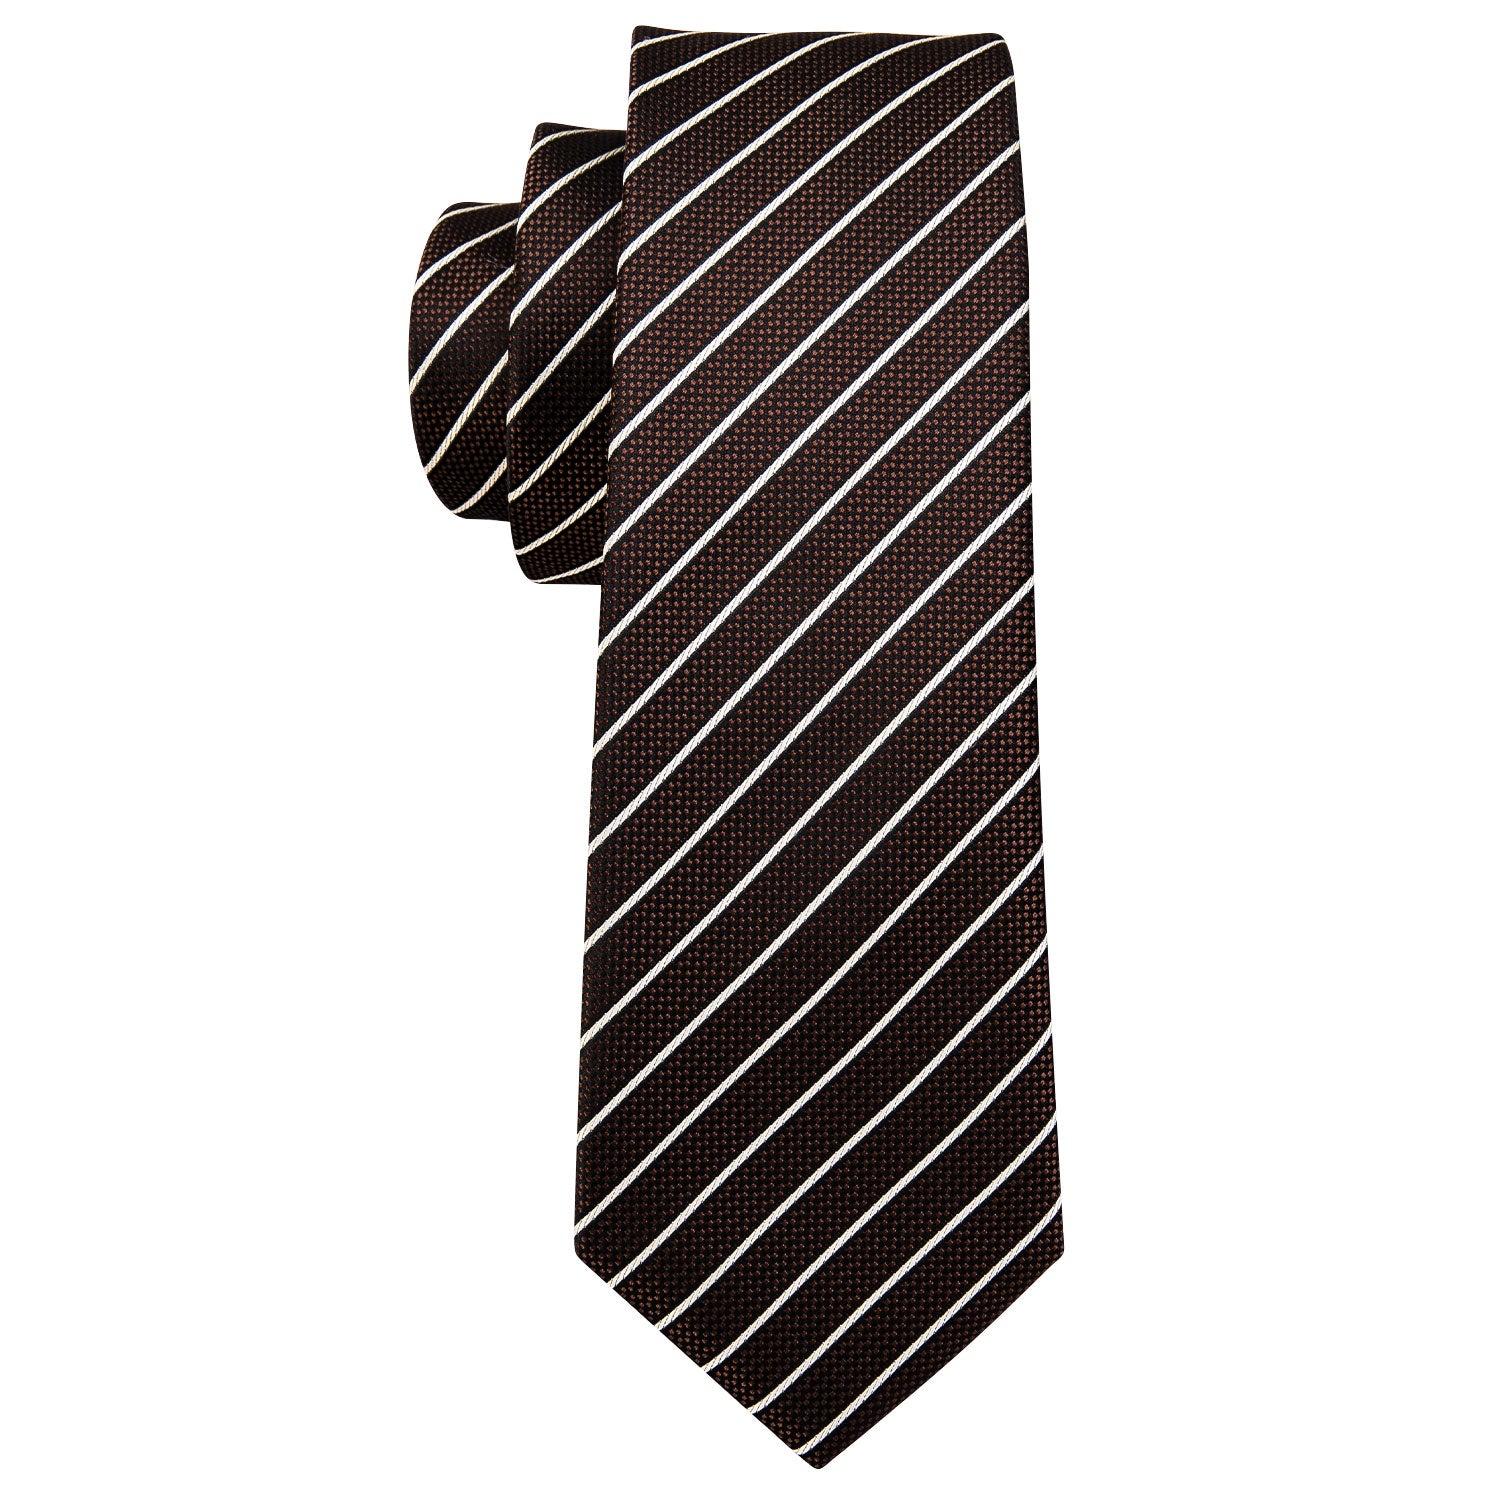 Brown White Striped Silk Tie Handkerchief Cufflinks Set